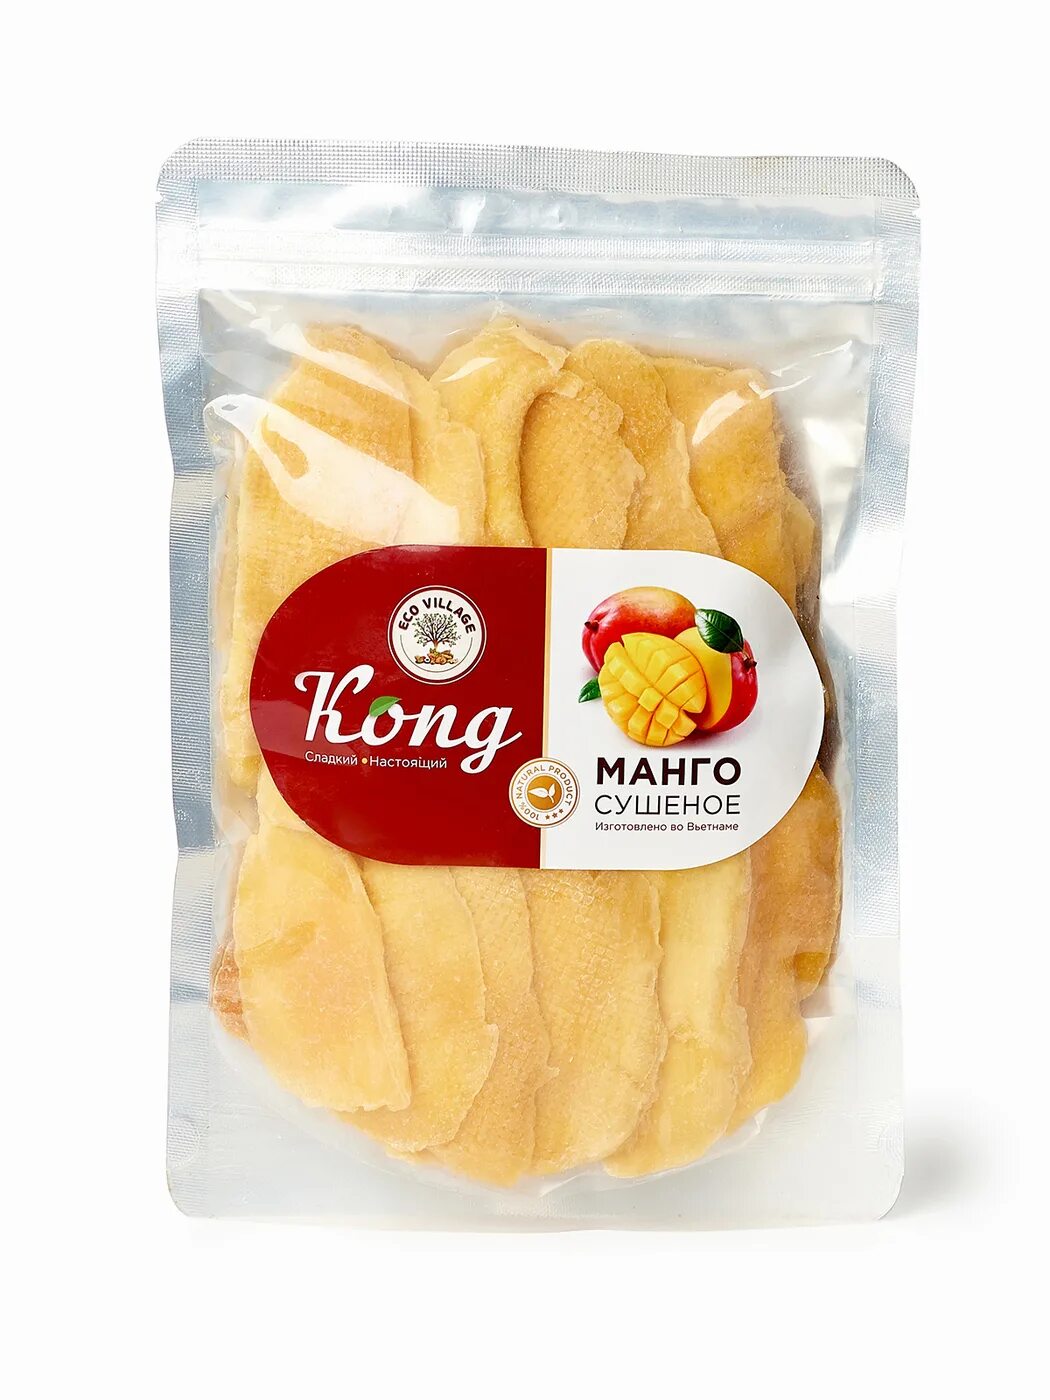 Манго сушеный Конг 500г. Манго сушеное Конг 500 гр. Конг сушеный манго 500 кг. Kong манго сушеный натуральный. Сколько стоит кг манго